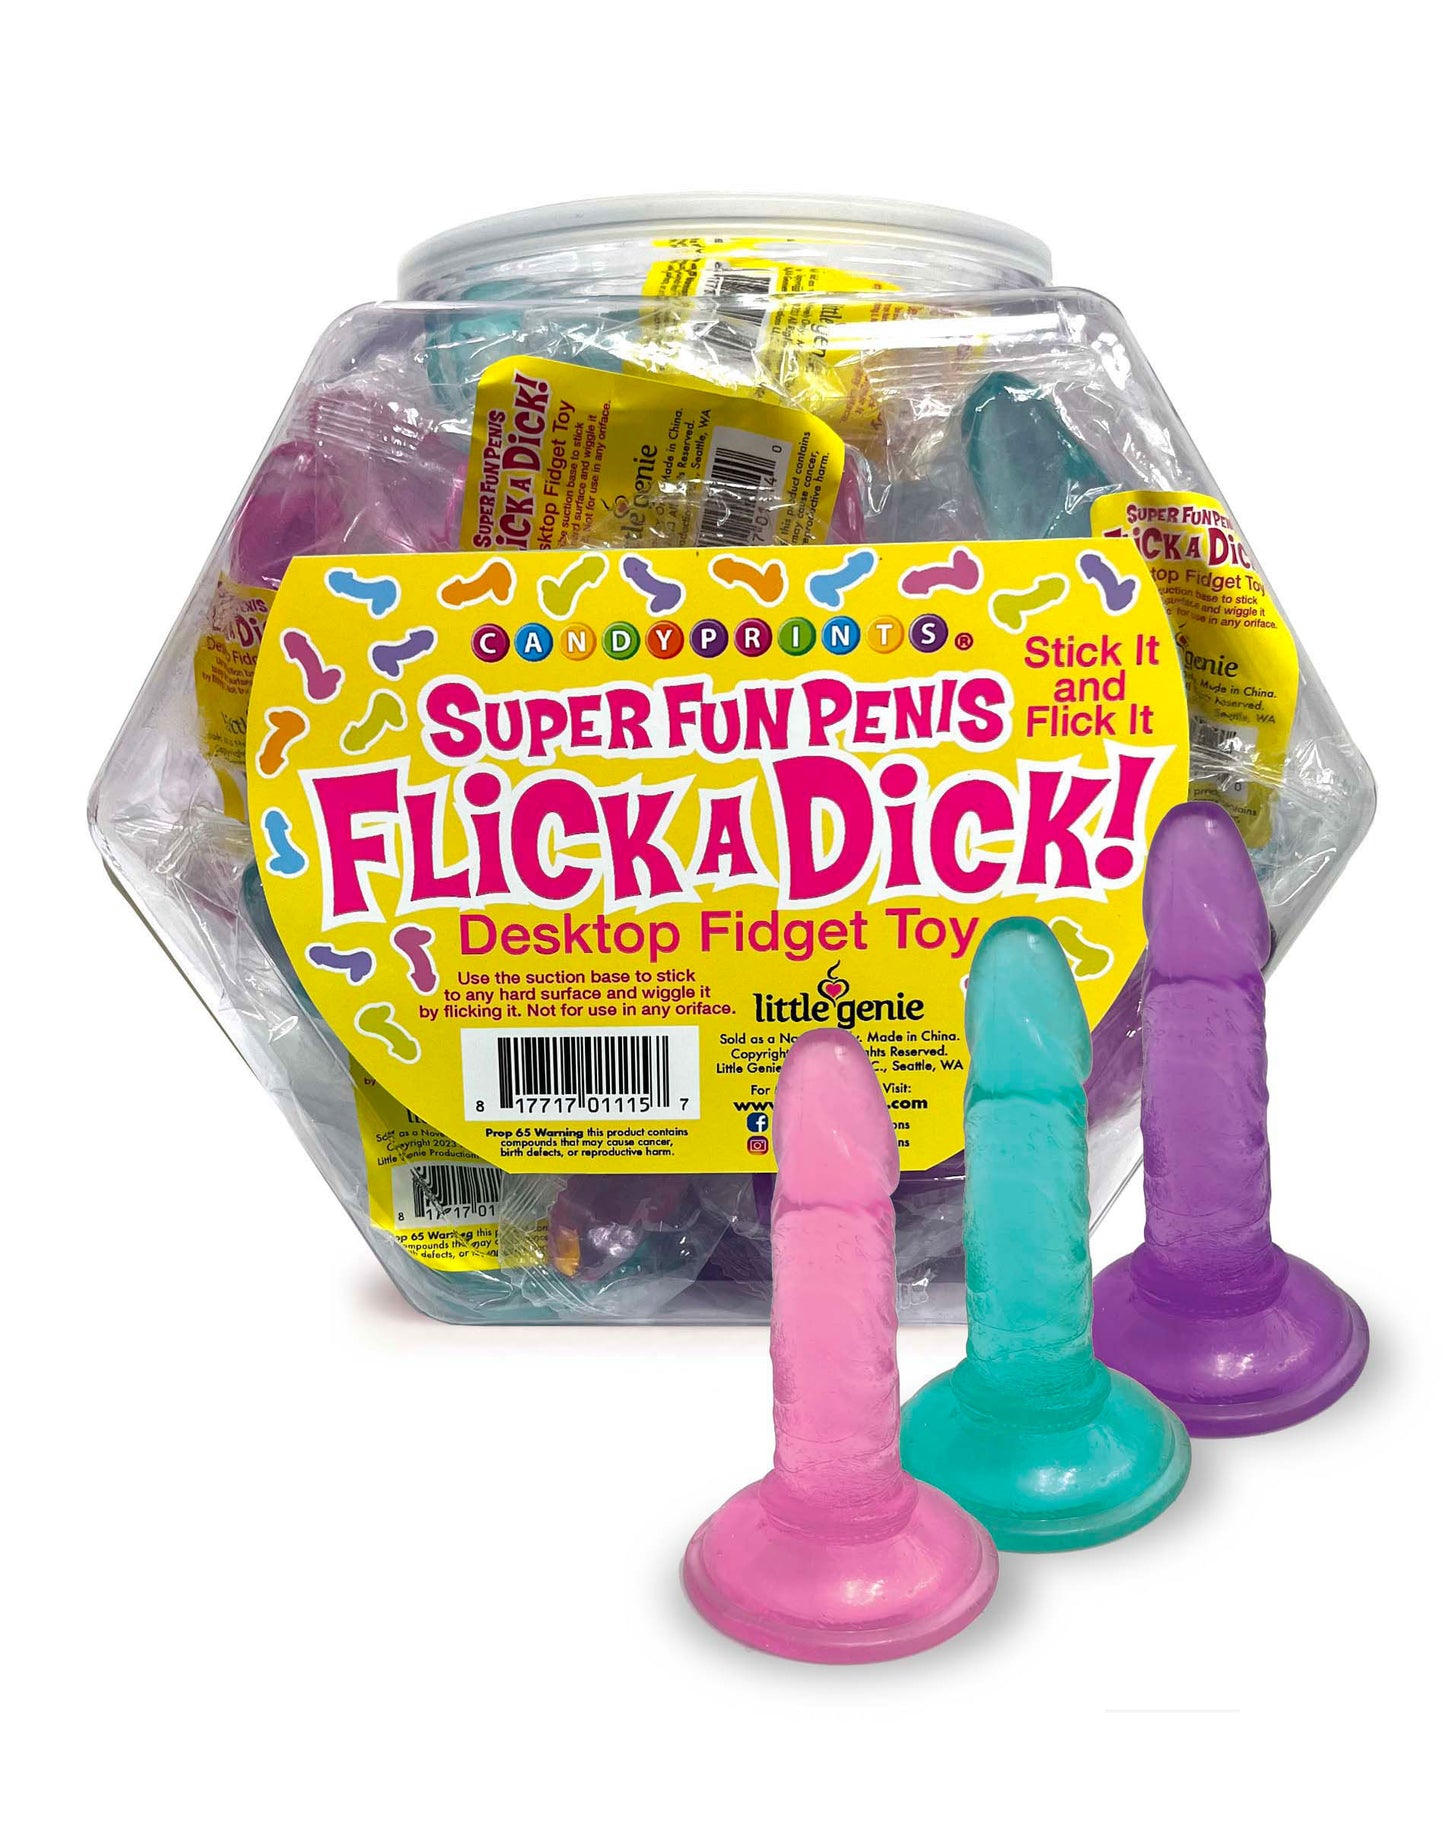 Flick a Dick - Desktop Fidget Toy - Display of 24